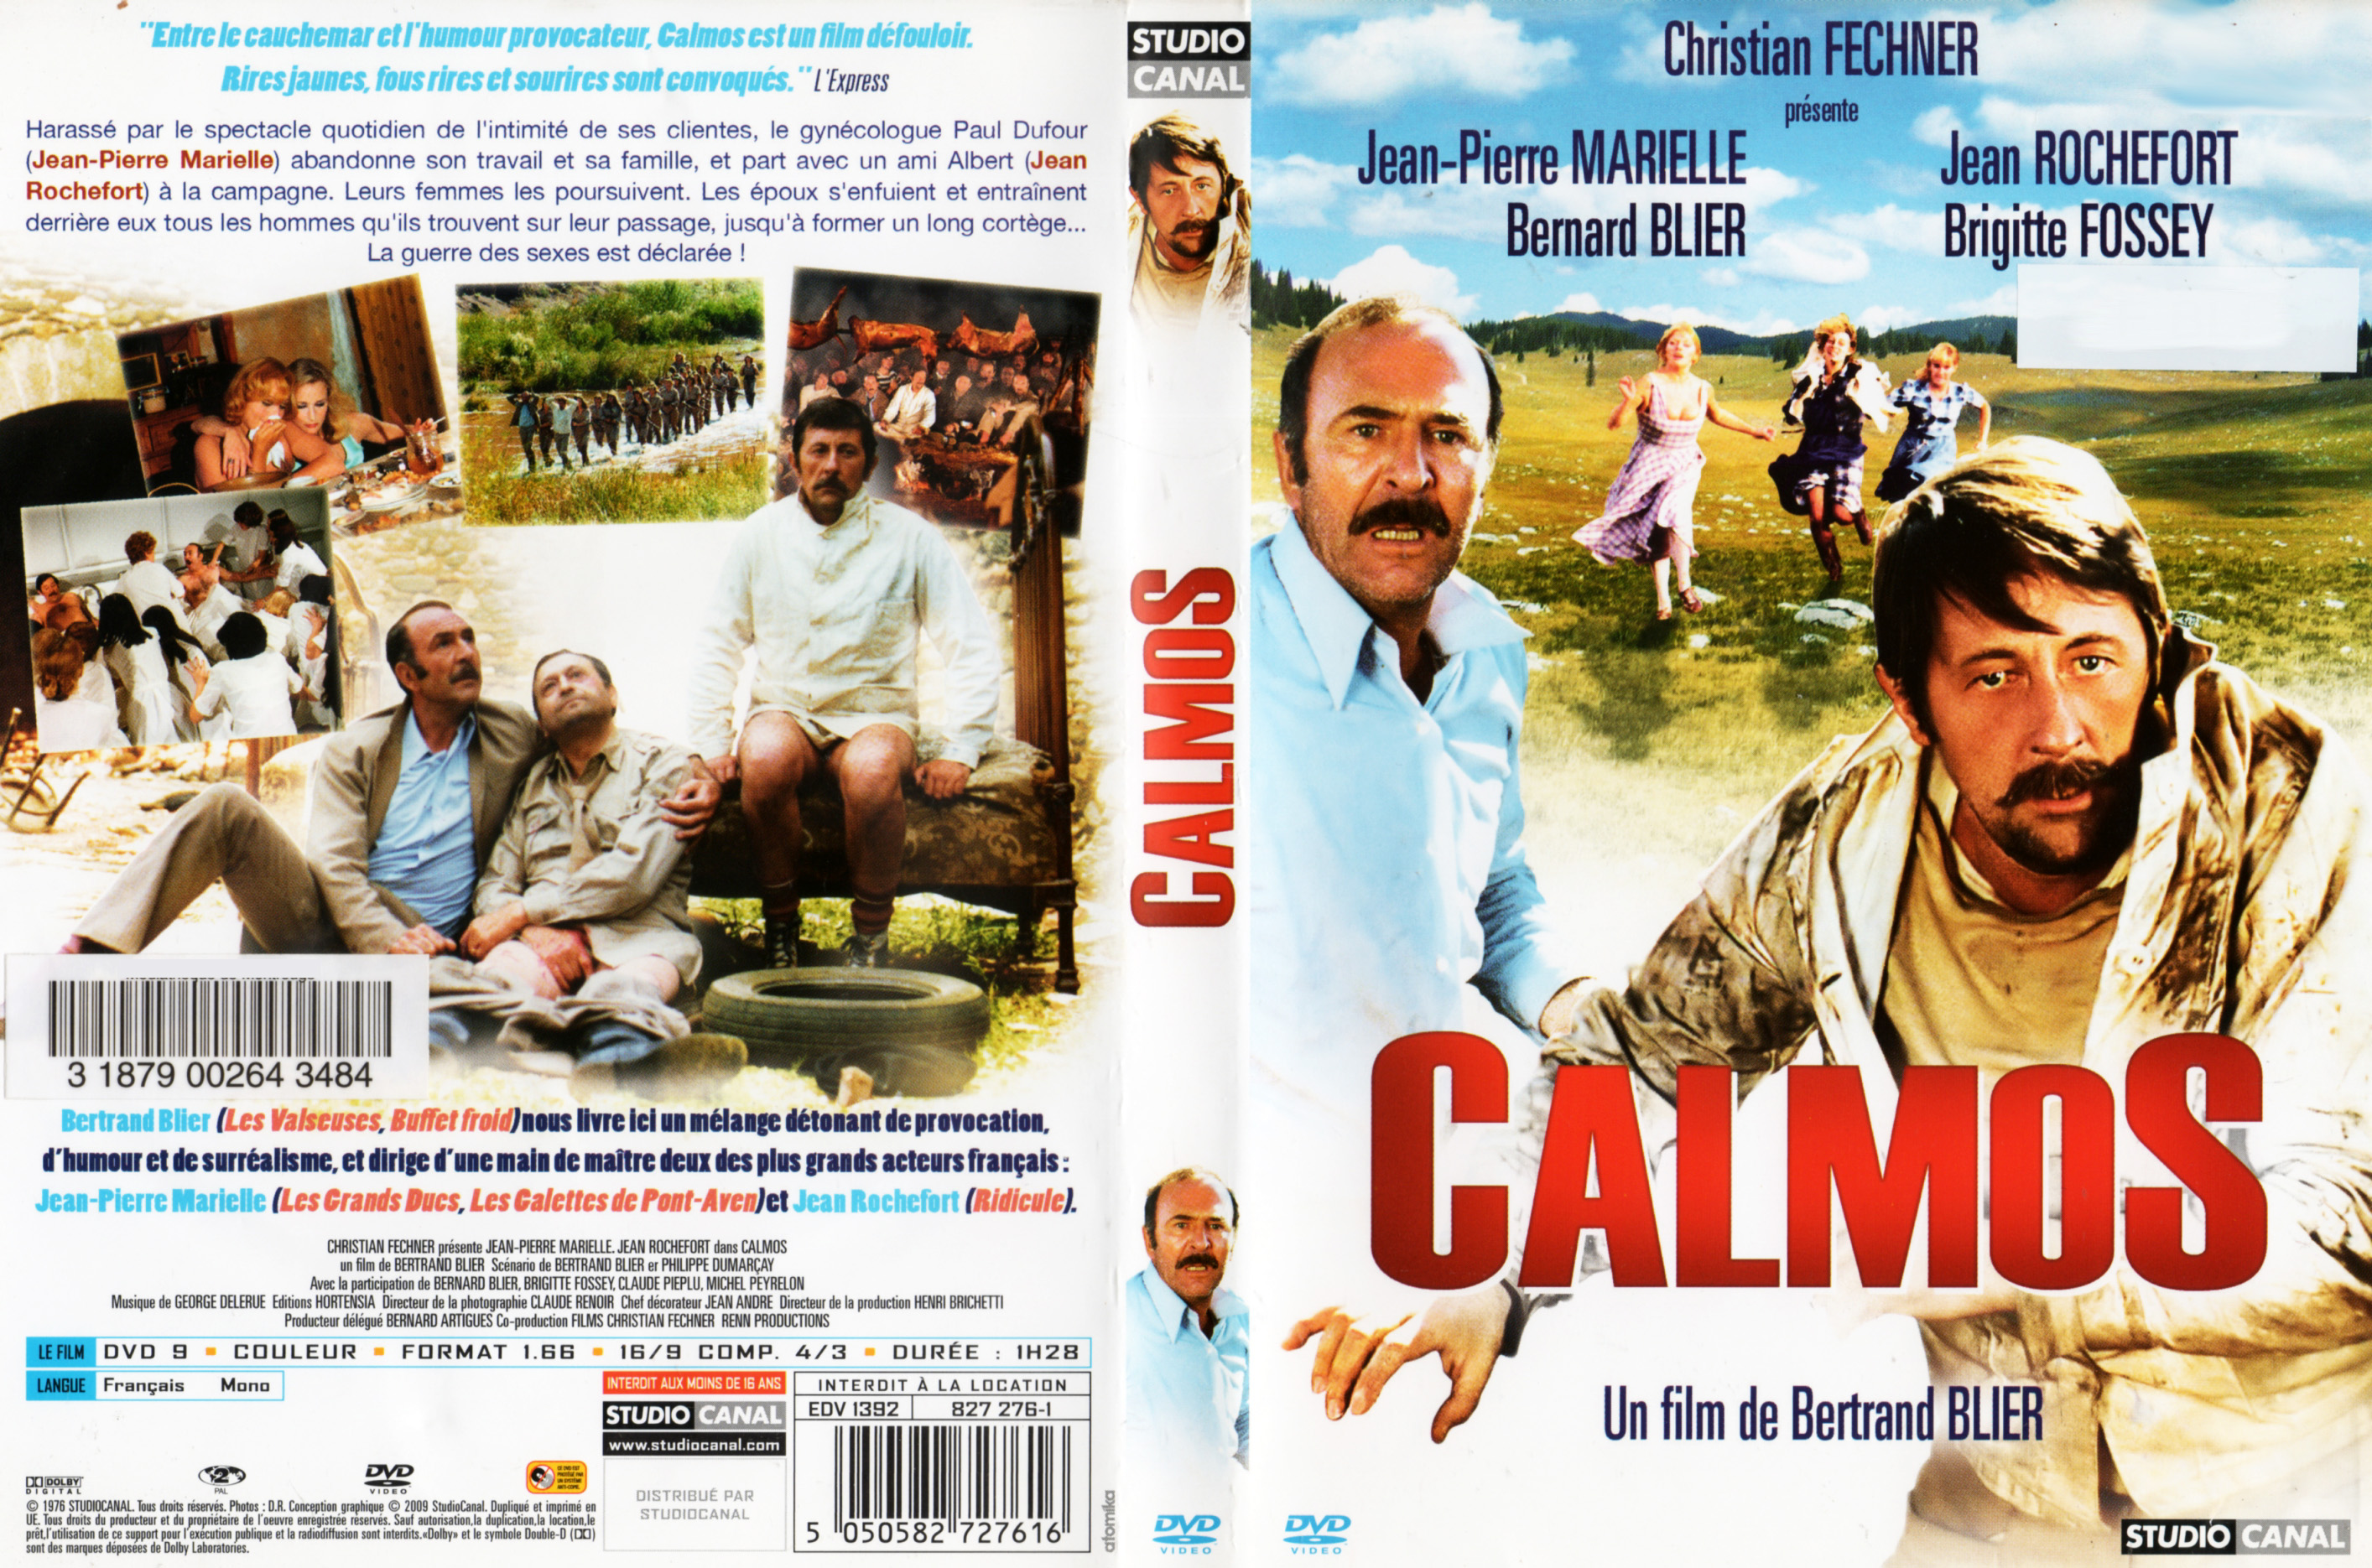 Jaquette DVD Calmos